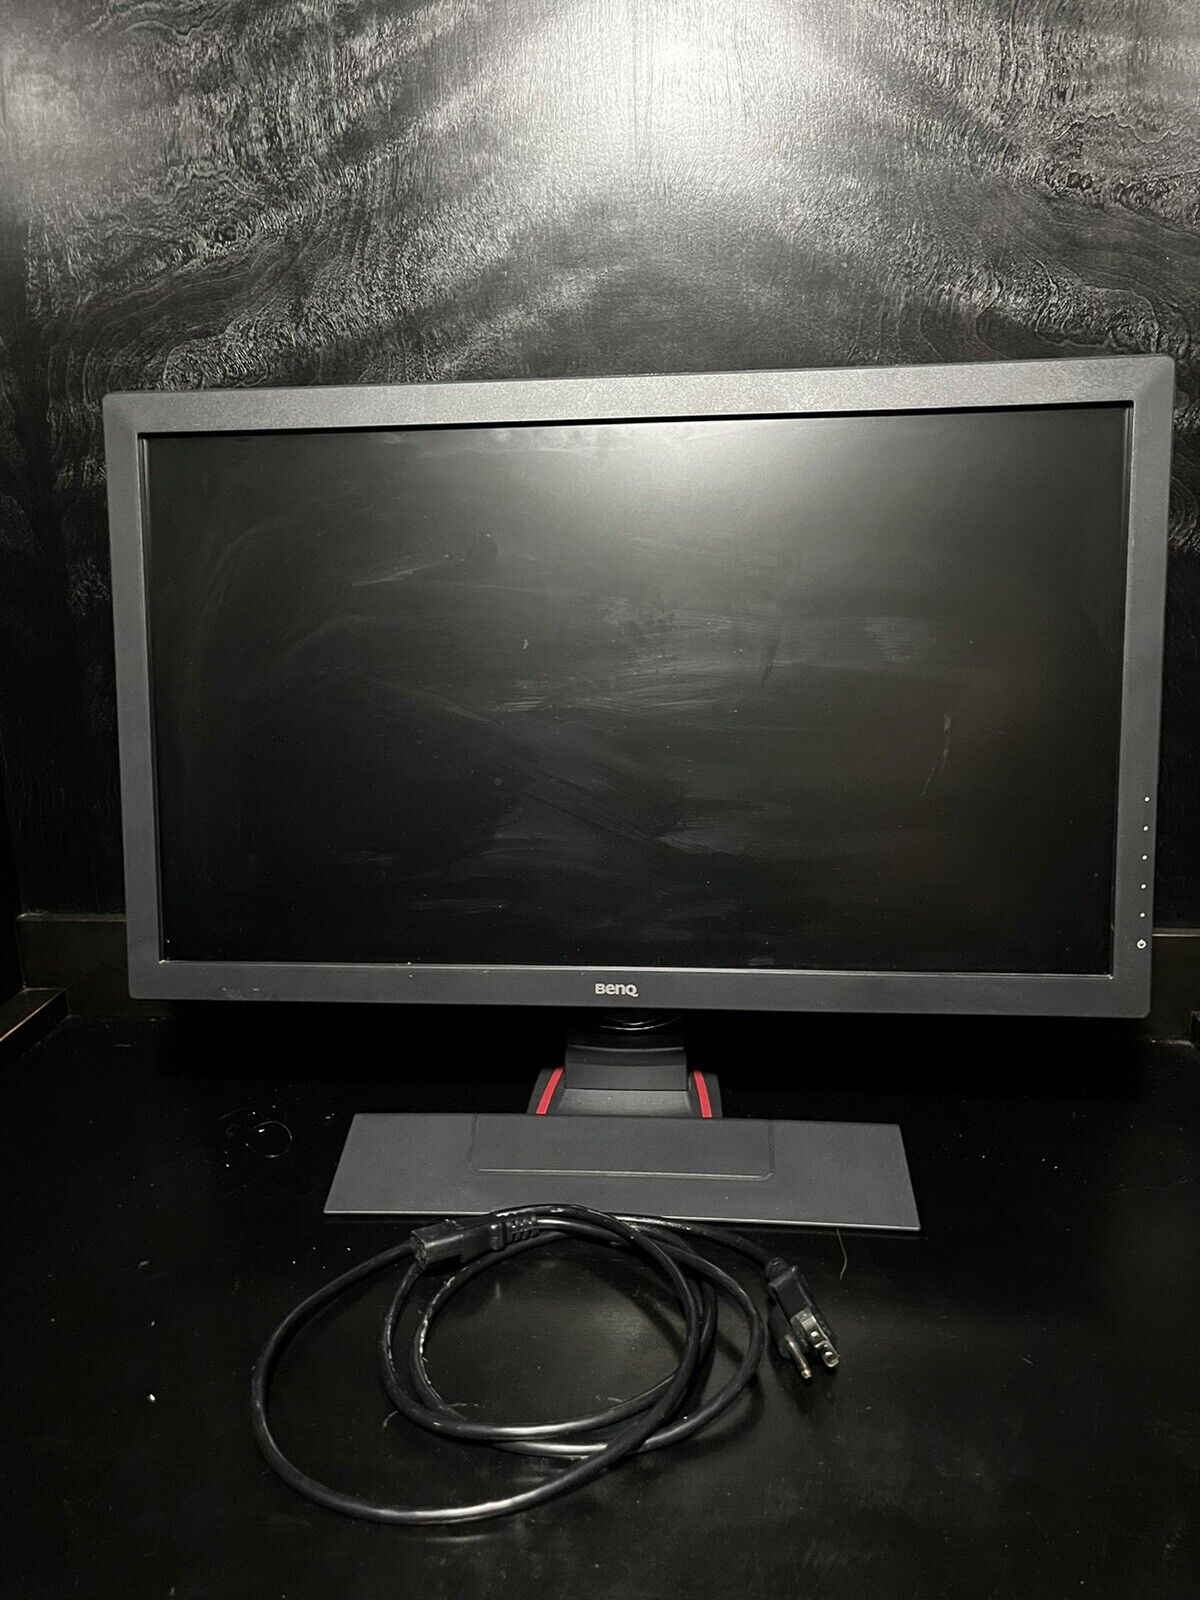 BenQ Zowie RL2455 24 inch Widescreen TN LCD Monitor